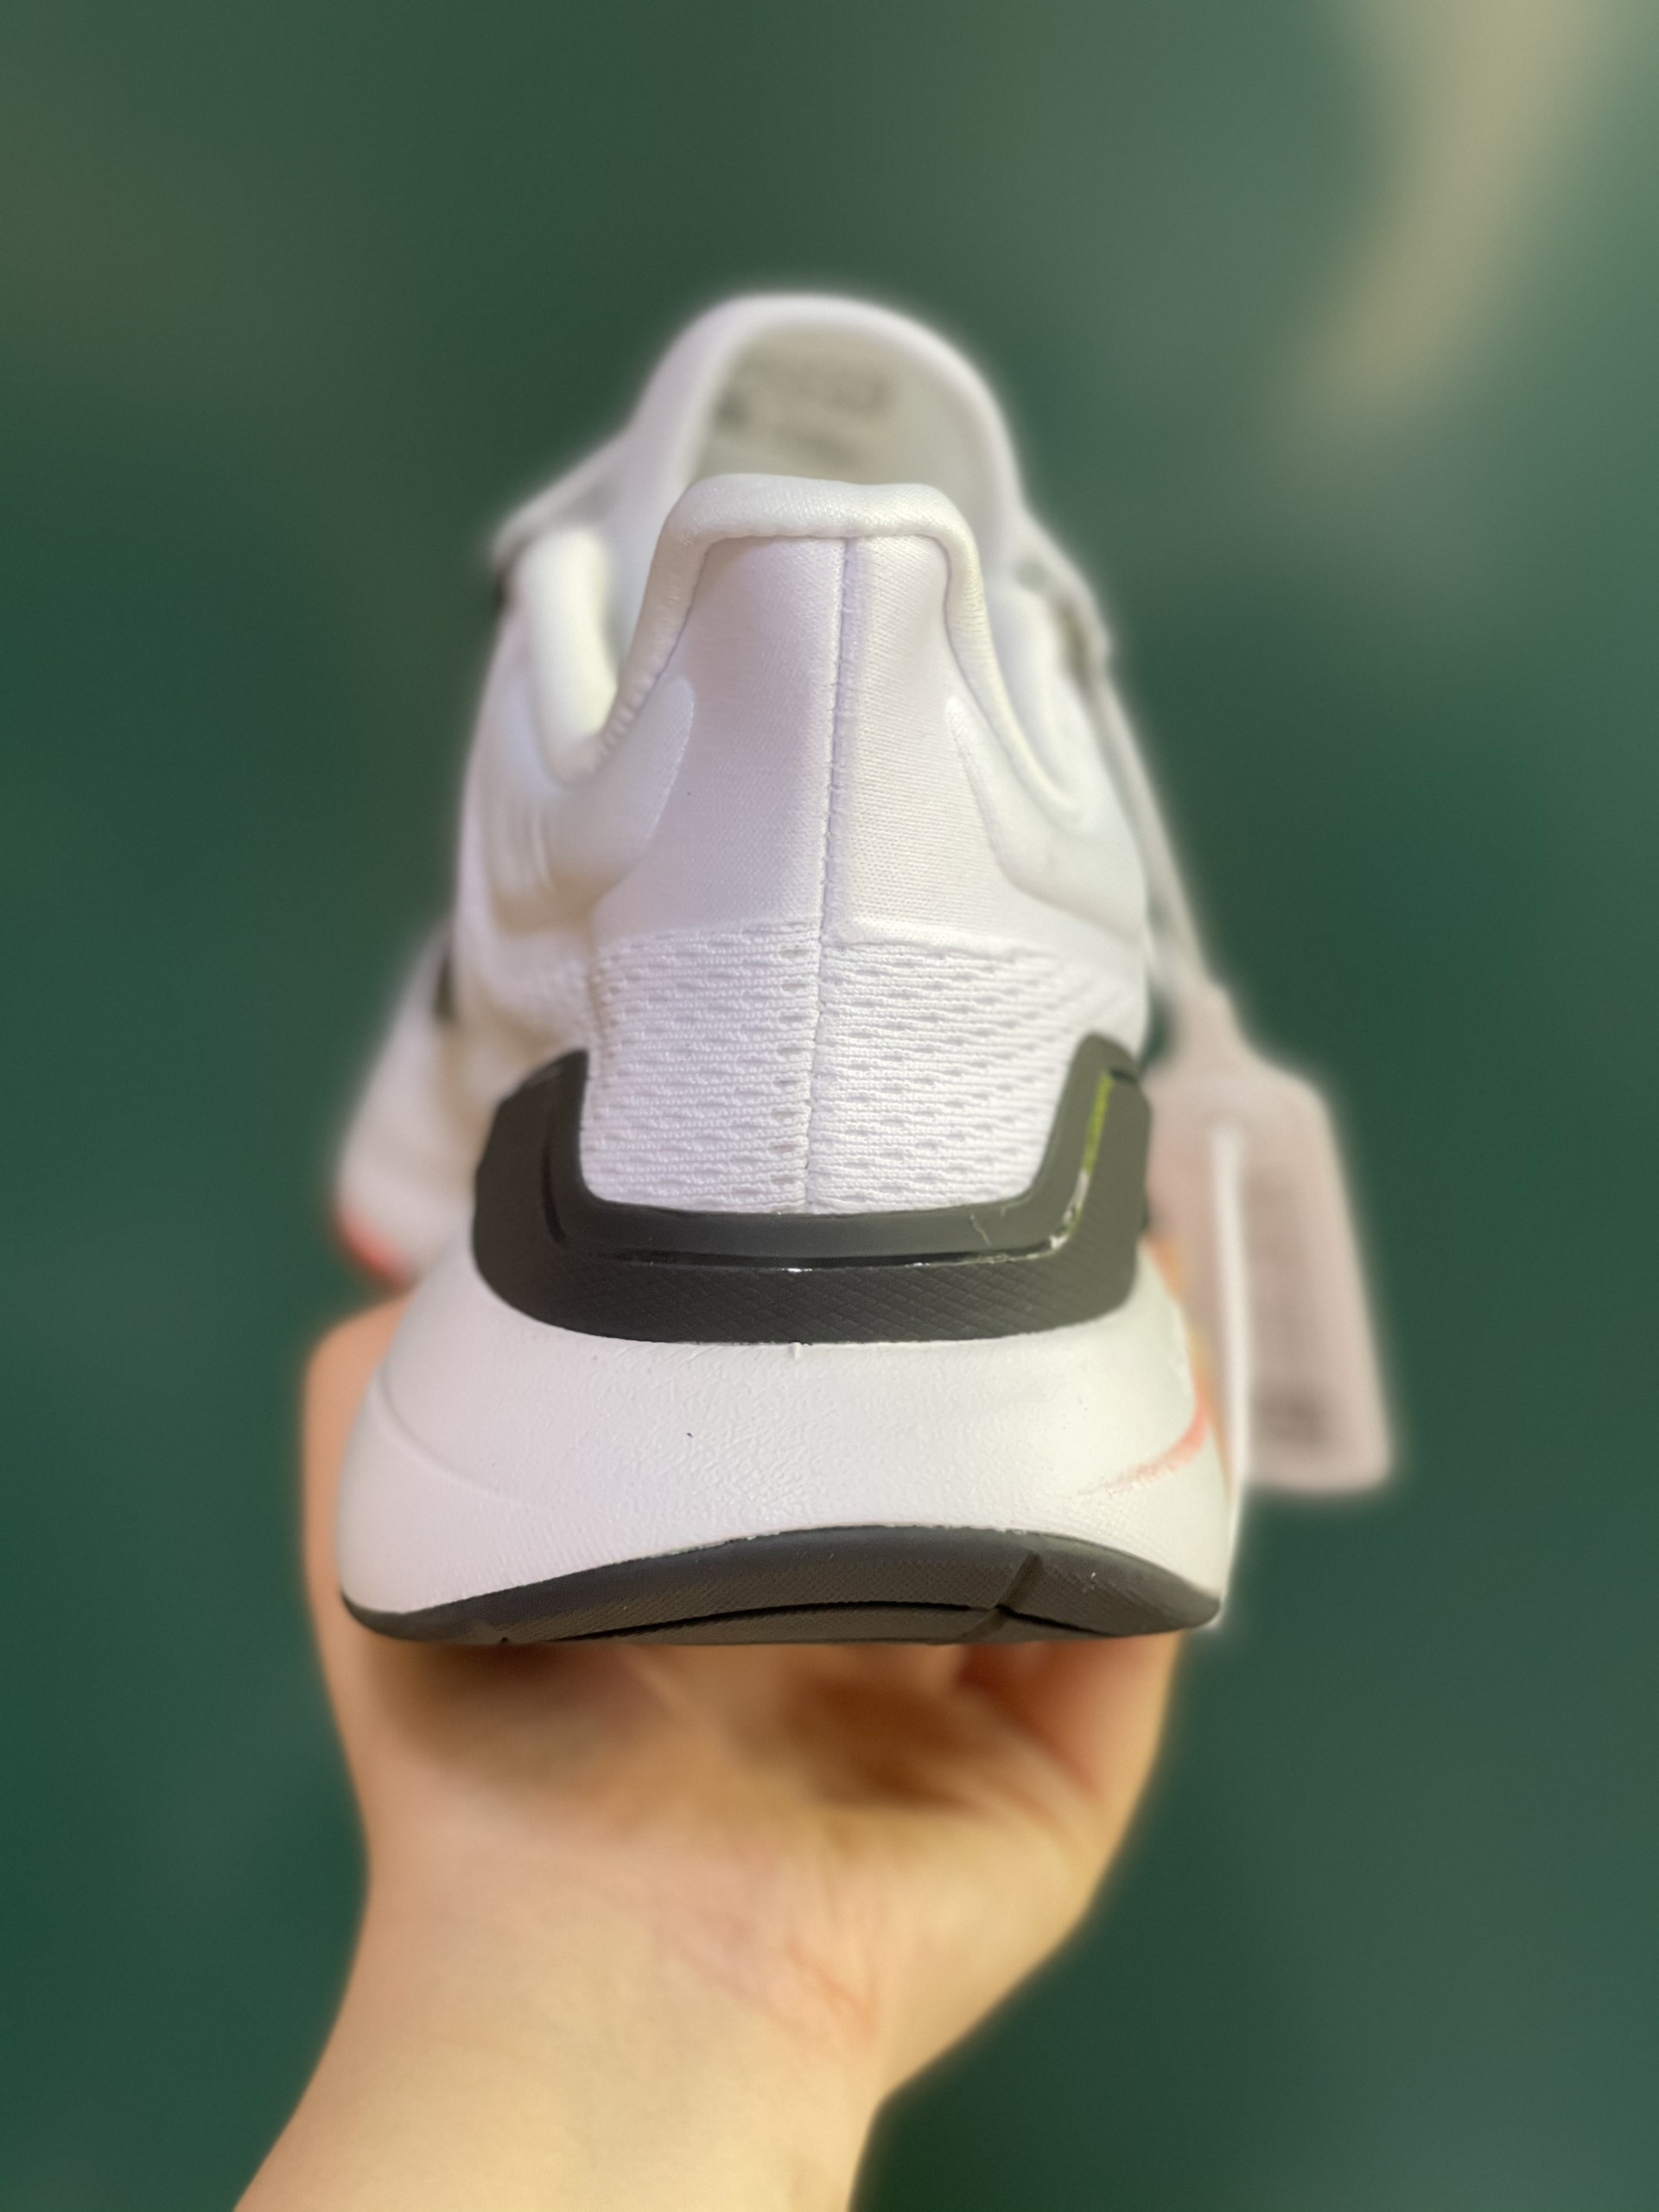 Giày Chạy Bộ Adidas EQ21 Trắng Cam Rep 1:1